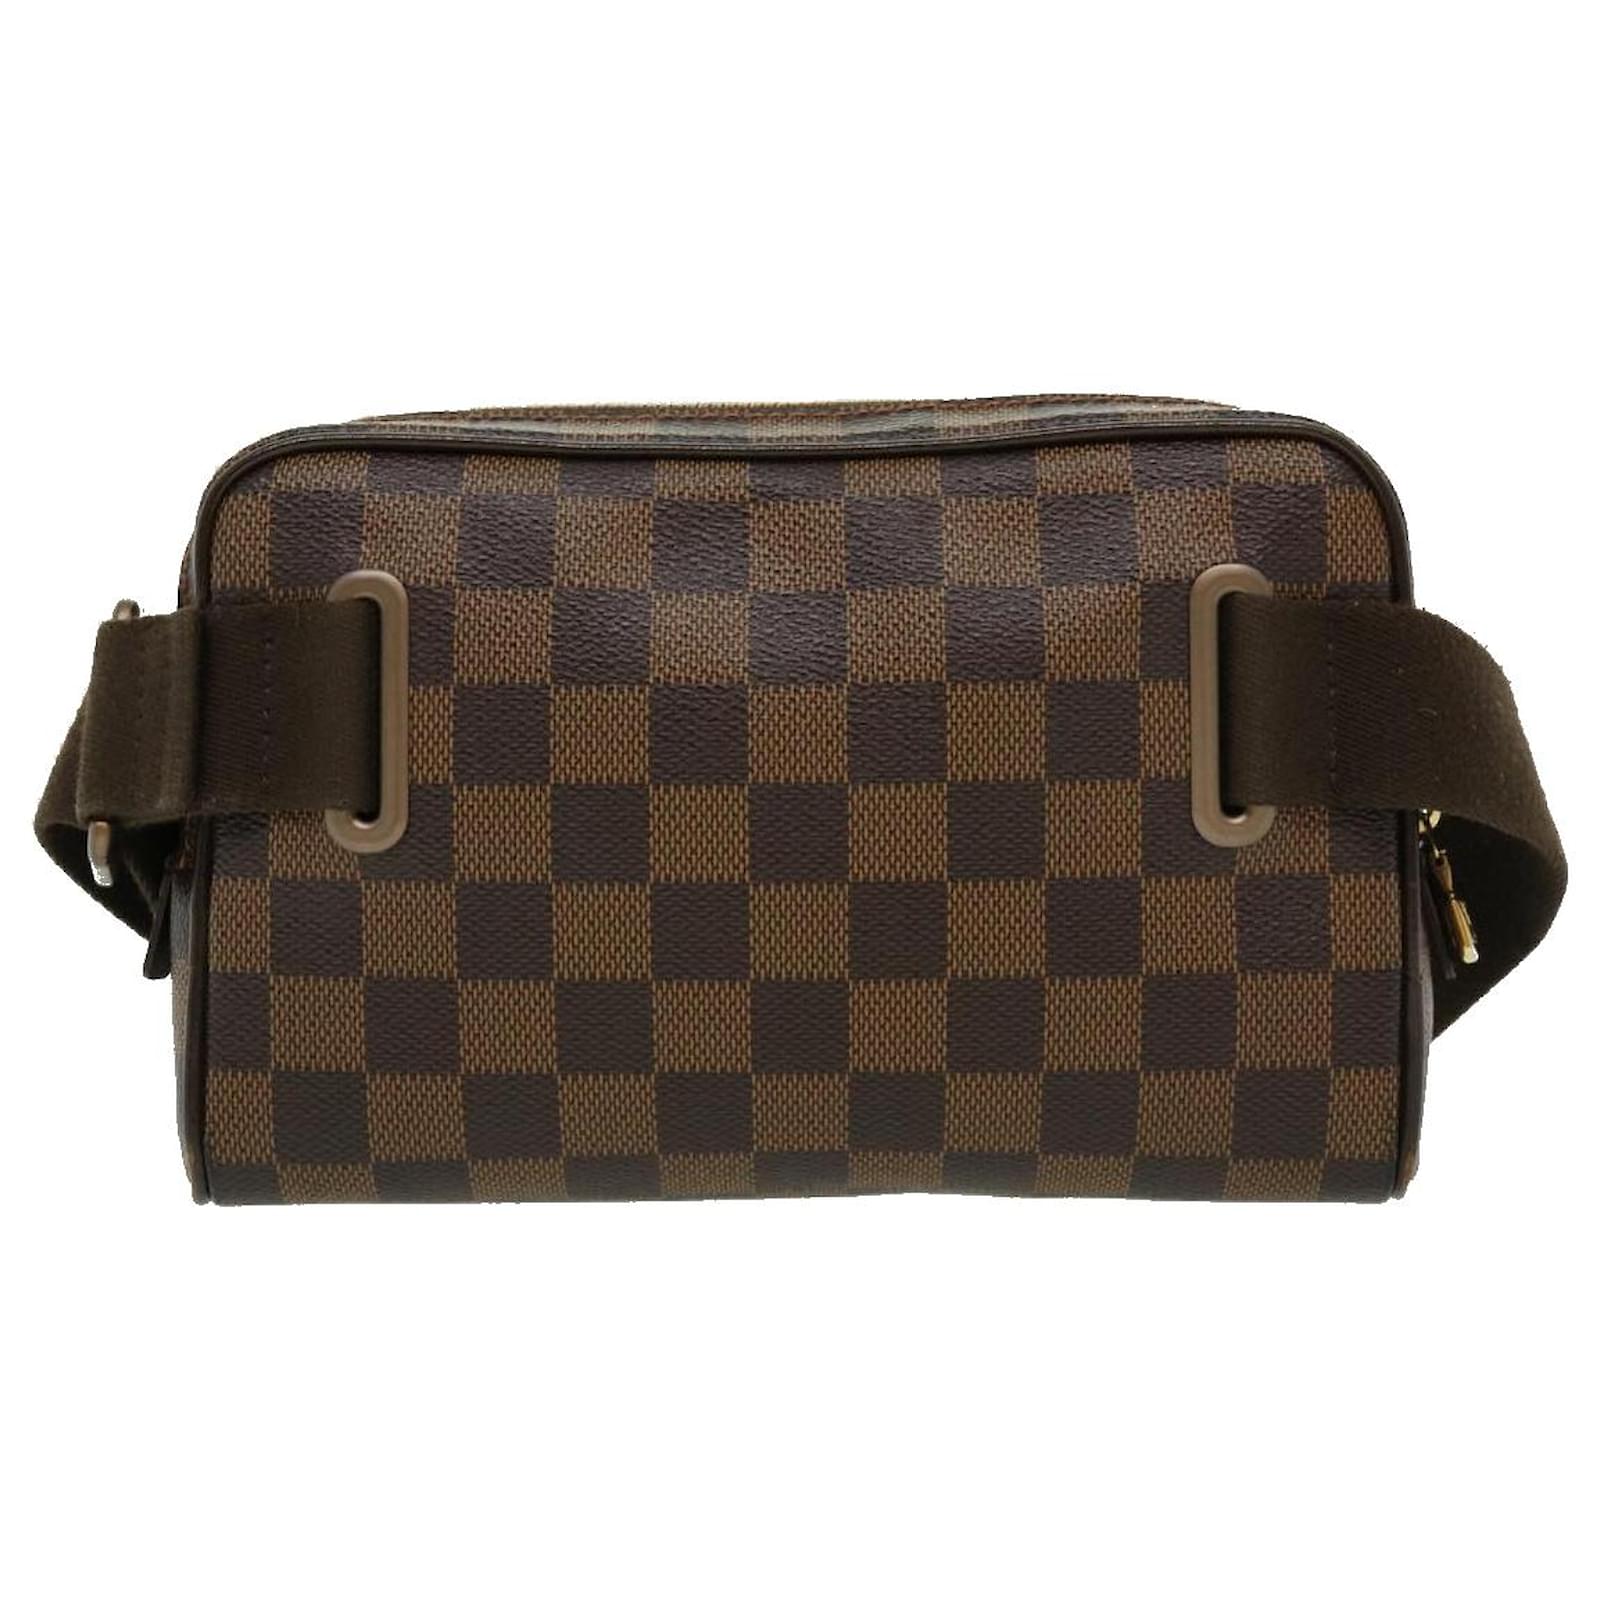 Louis-Vuitton-Damier-Ebene-Bum-Bag-Brooklyn-Waist-Bag-N41101